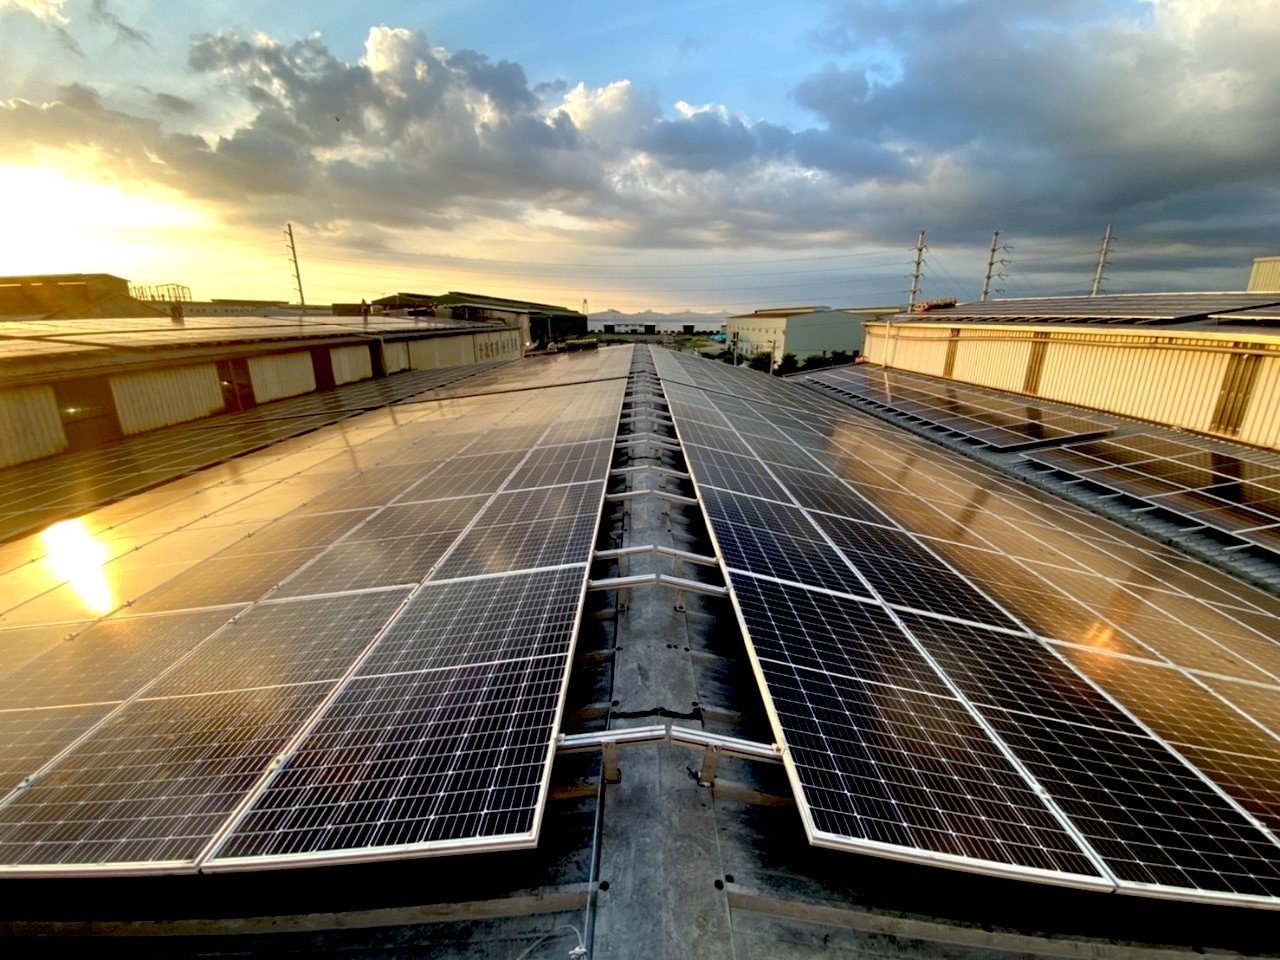 太陽能、台灣太陽能、環拓科技、屏東太陽能、屋頂太陽能、屋頂型太陽能、工廠太陽能、太陽板、太陽能品牌、太陽能廠商、台灣太陽能品牌、台灣太陽能廠商